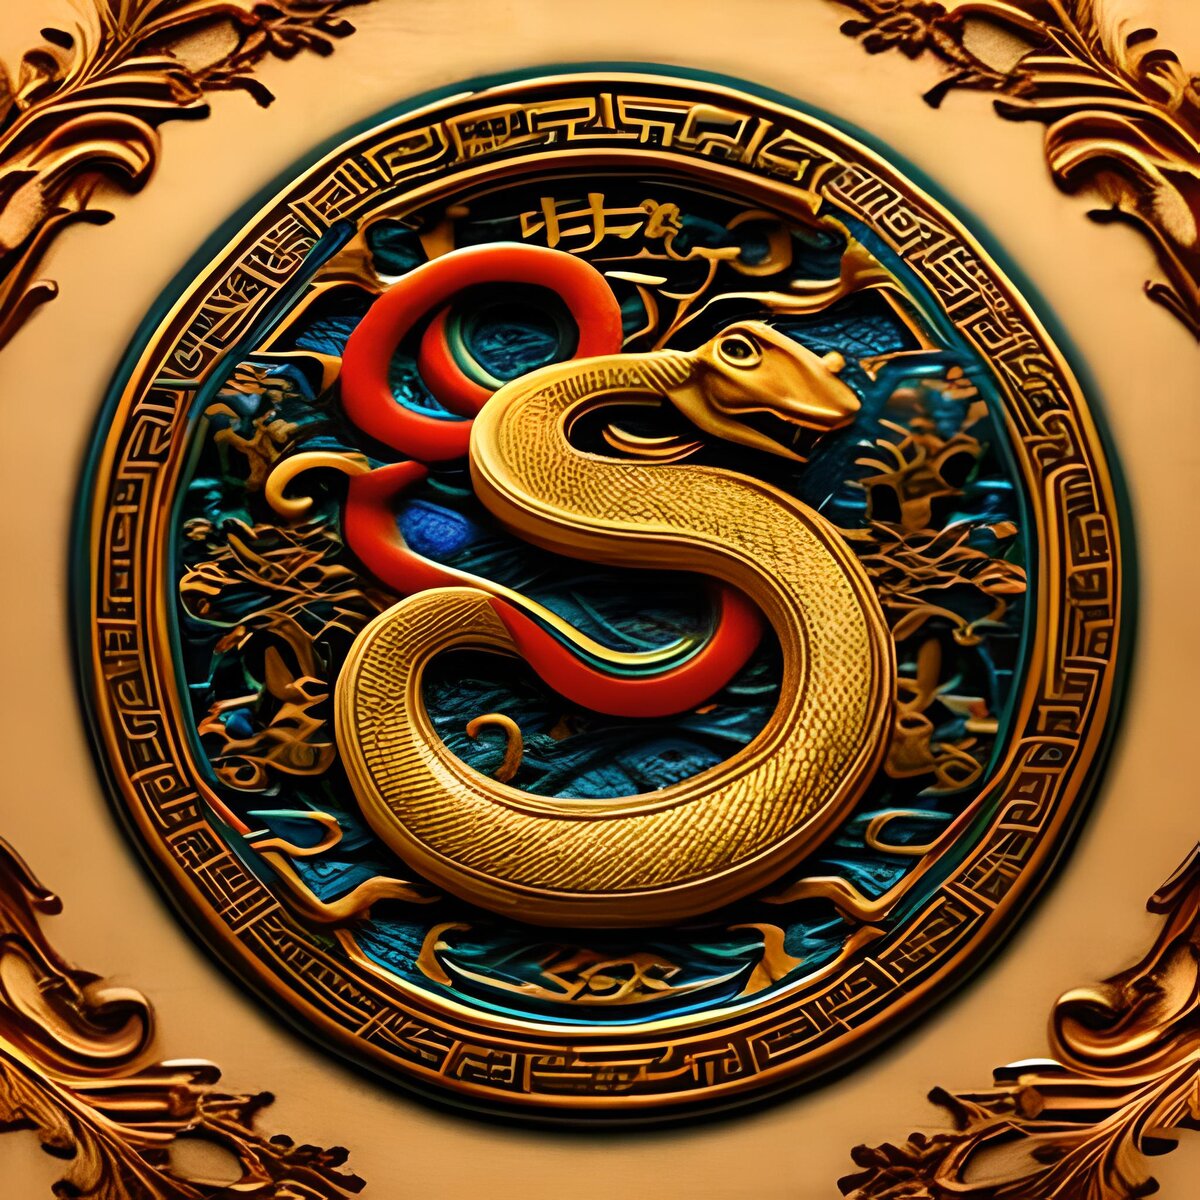 Змея зодиака. Дракон китайский Зодиак. Символы Китая. Астрологическая змея. Драконы в Восточном стиле от нейросетей.